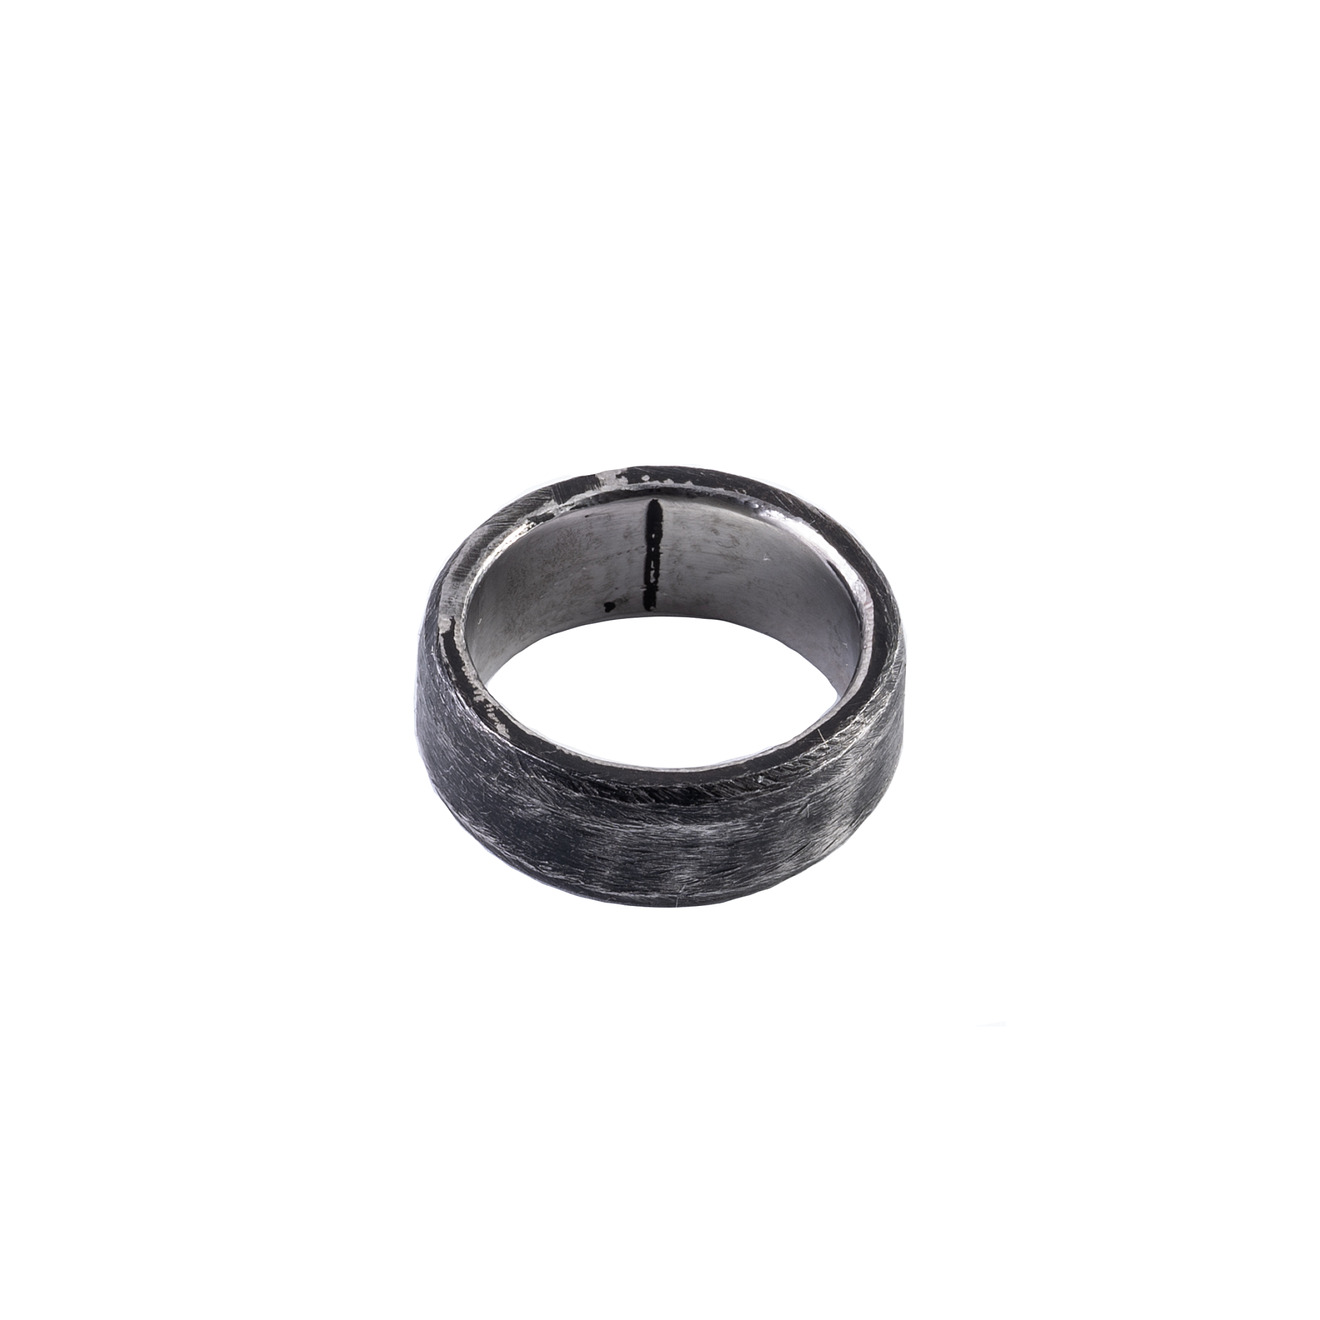 ko and co кольцо печатка proin из нержавеющей стали Ko and Co Кольцо RONDA из нержавеющей стали